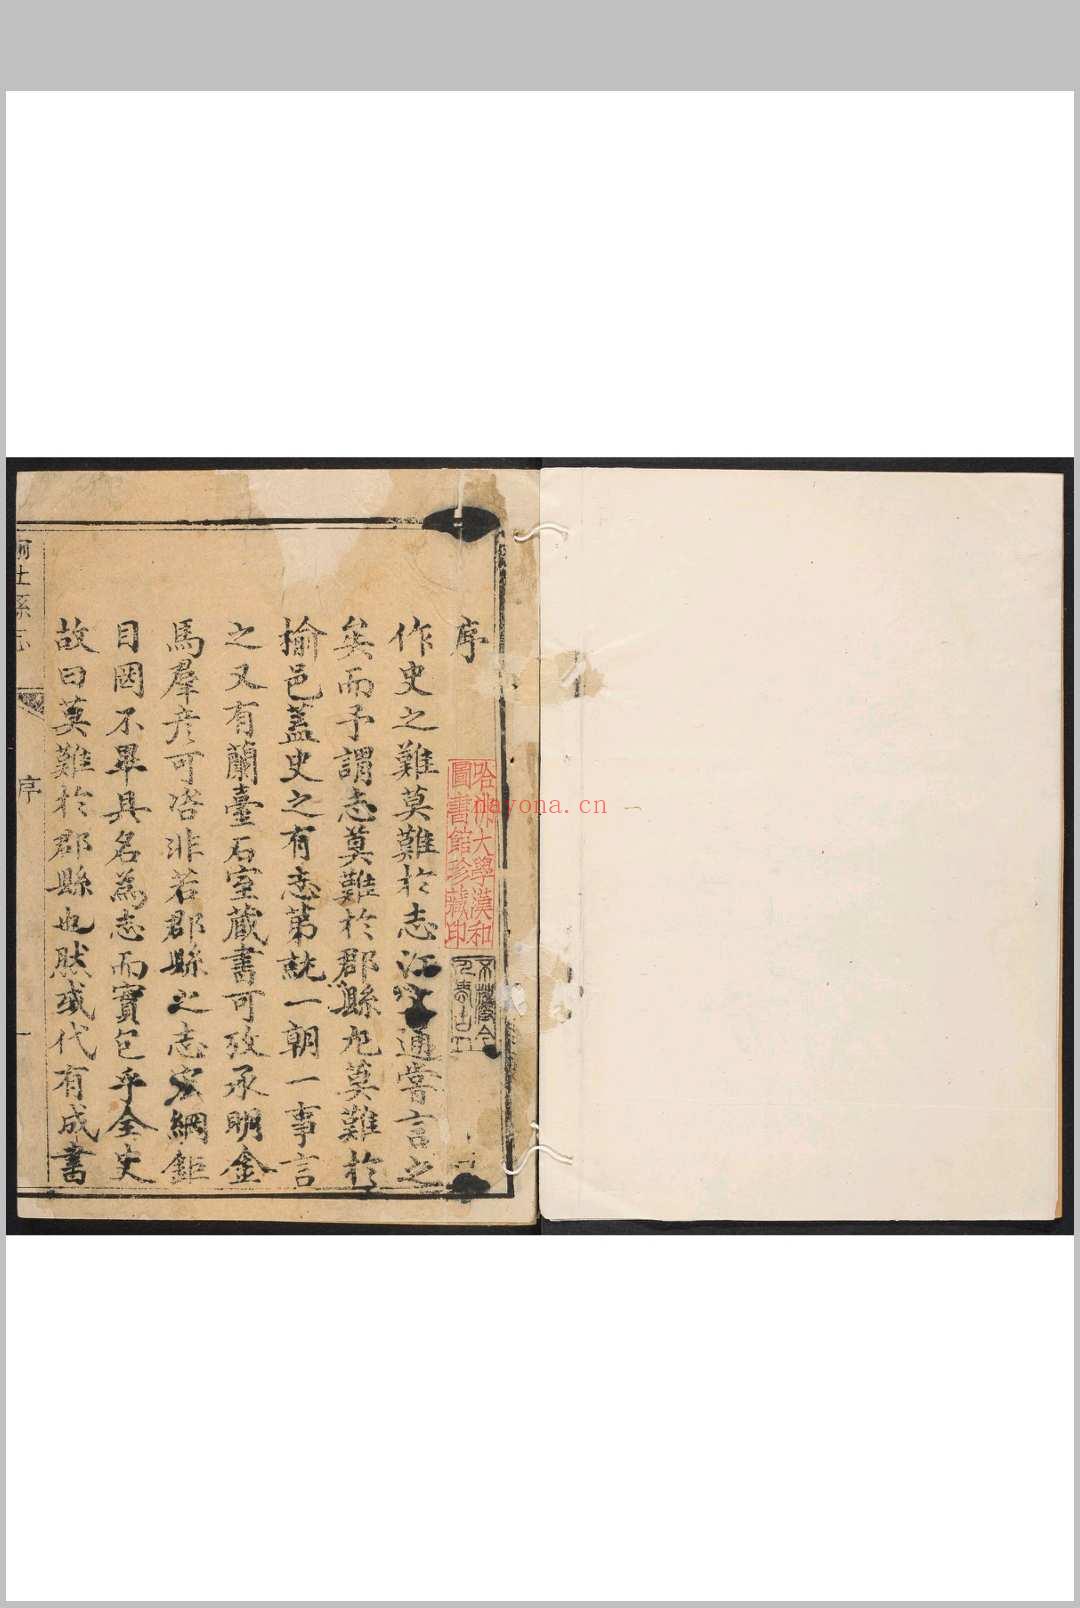 榆社县志  12卷 孟涛等纂 费映奎修.乾隆8年 [1743]